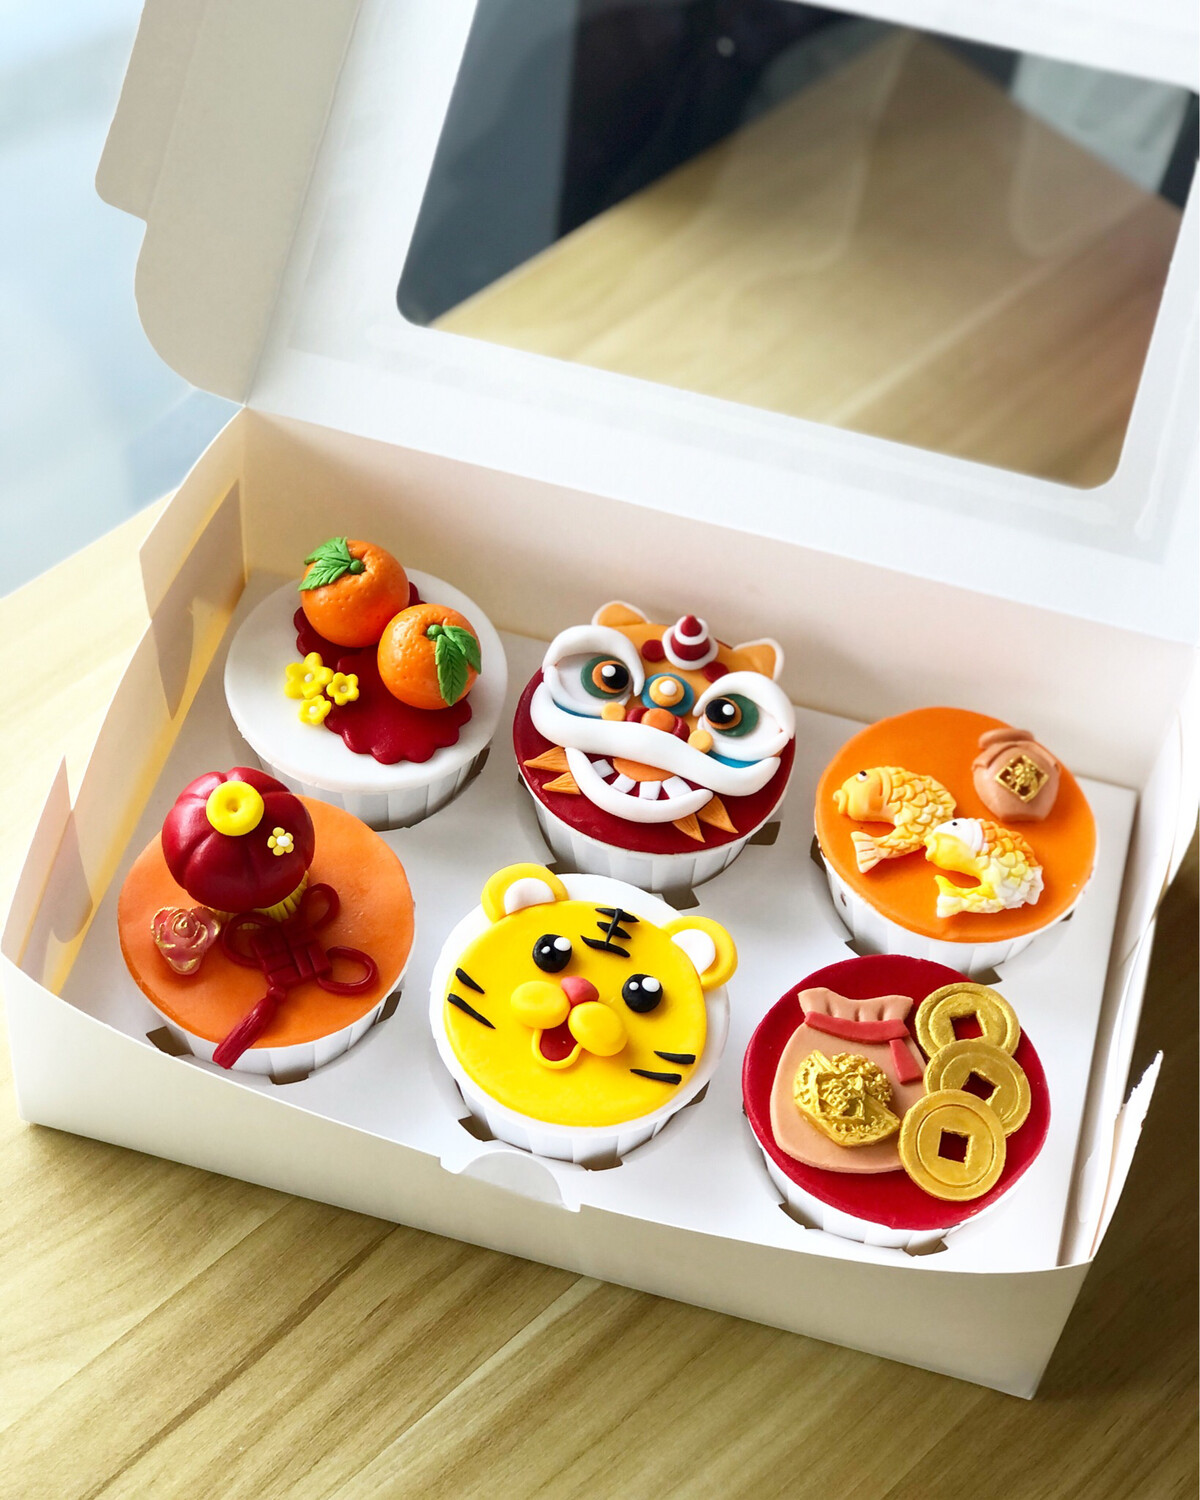 Festive - CNY Cupcakes 2 